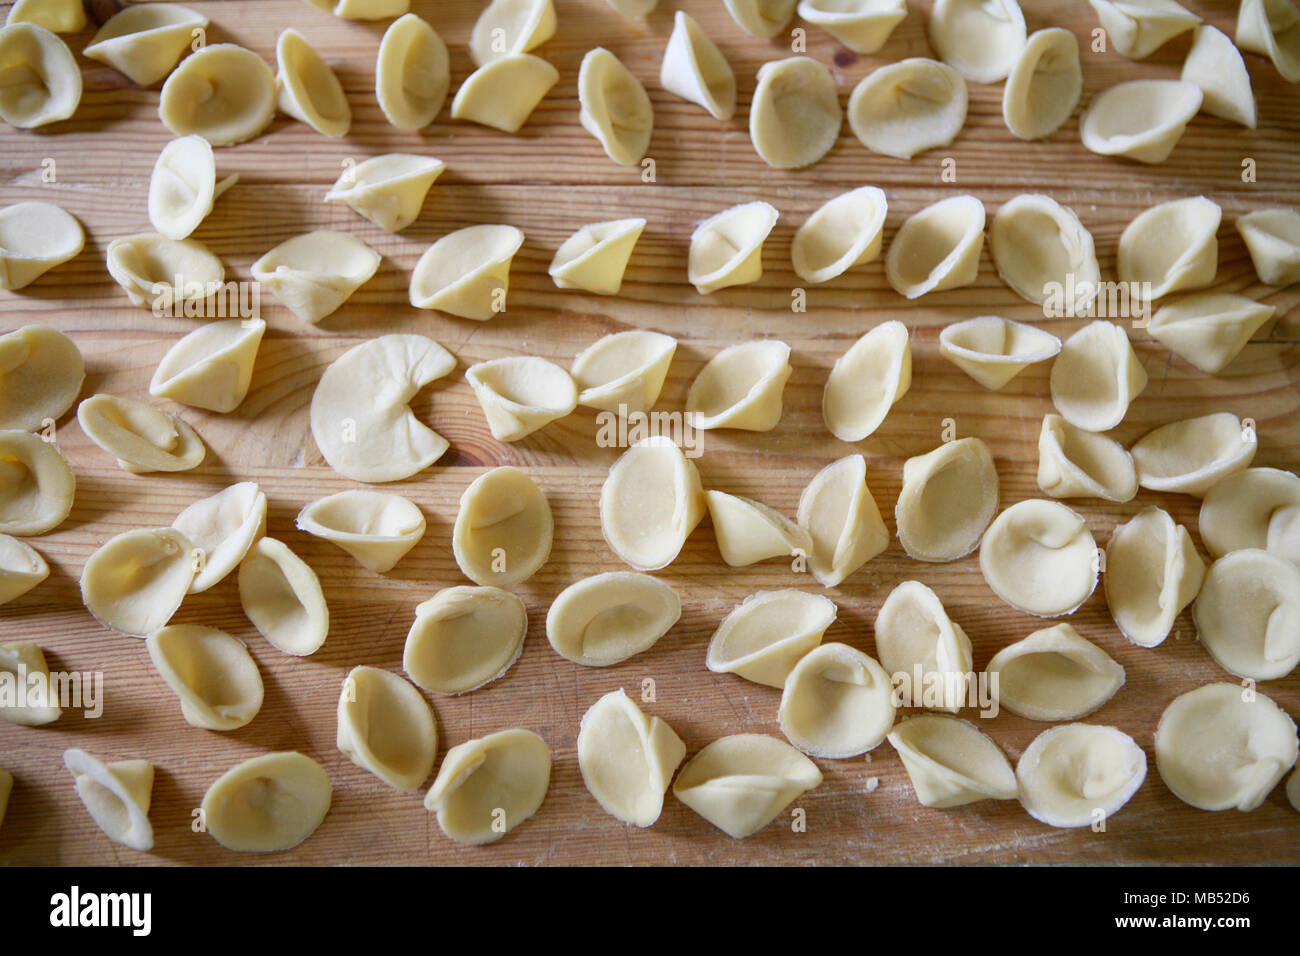 Orecchiette raw pasta Stock Photo